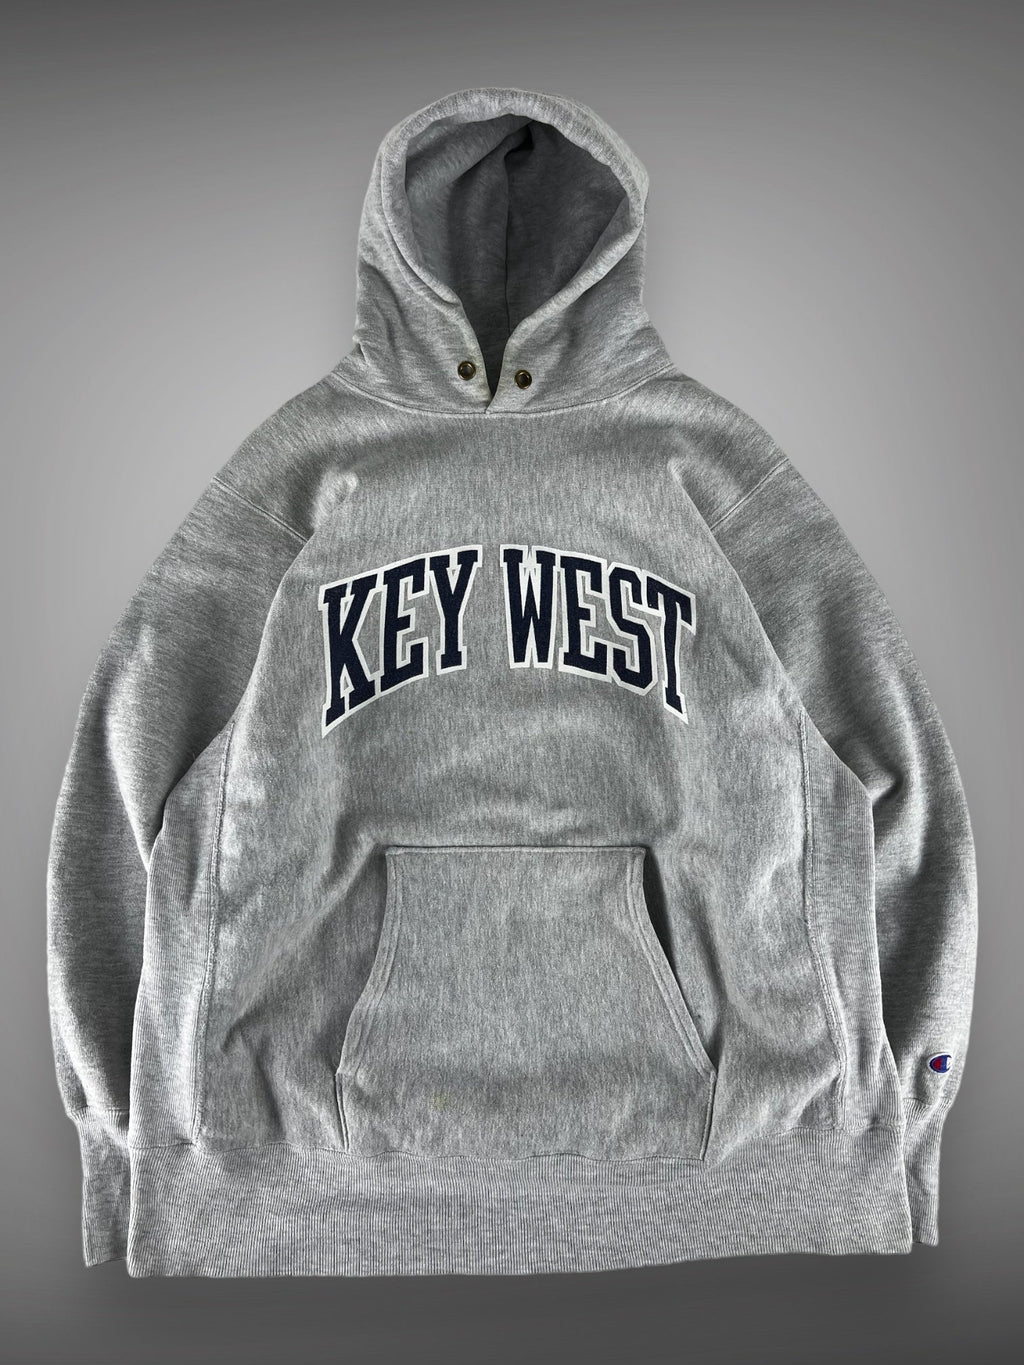 90s Champion Key West reverse weave hooded sweatshirt XL